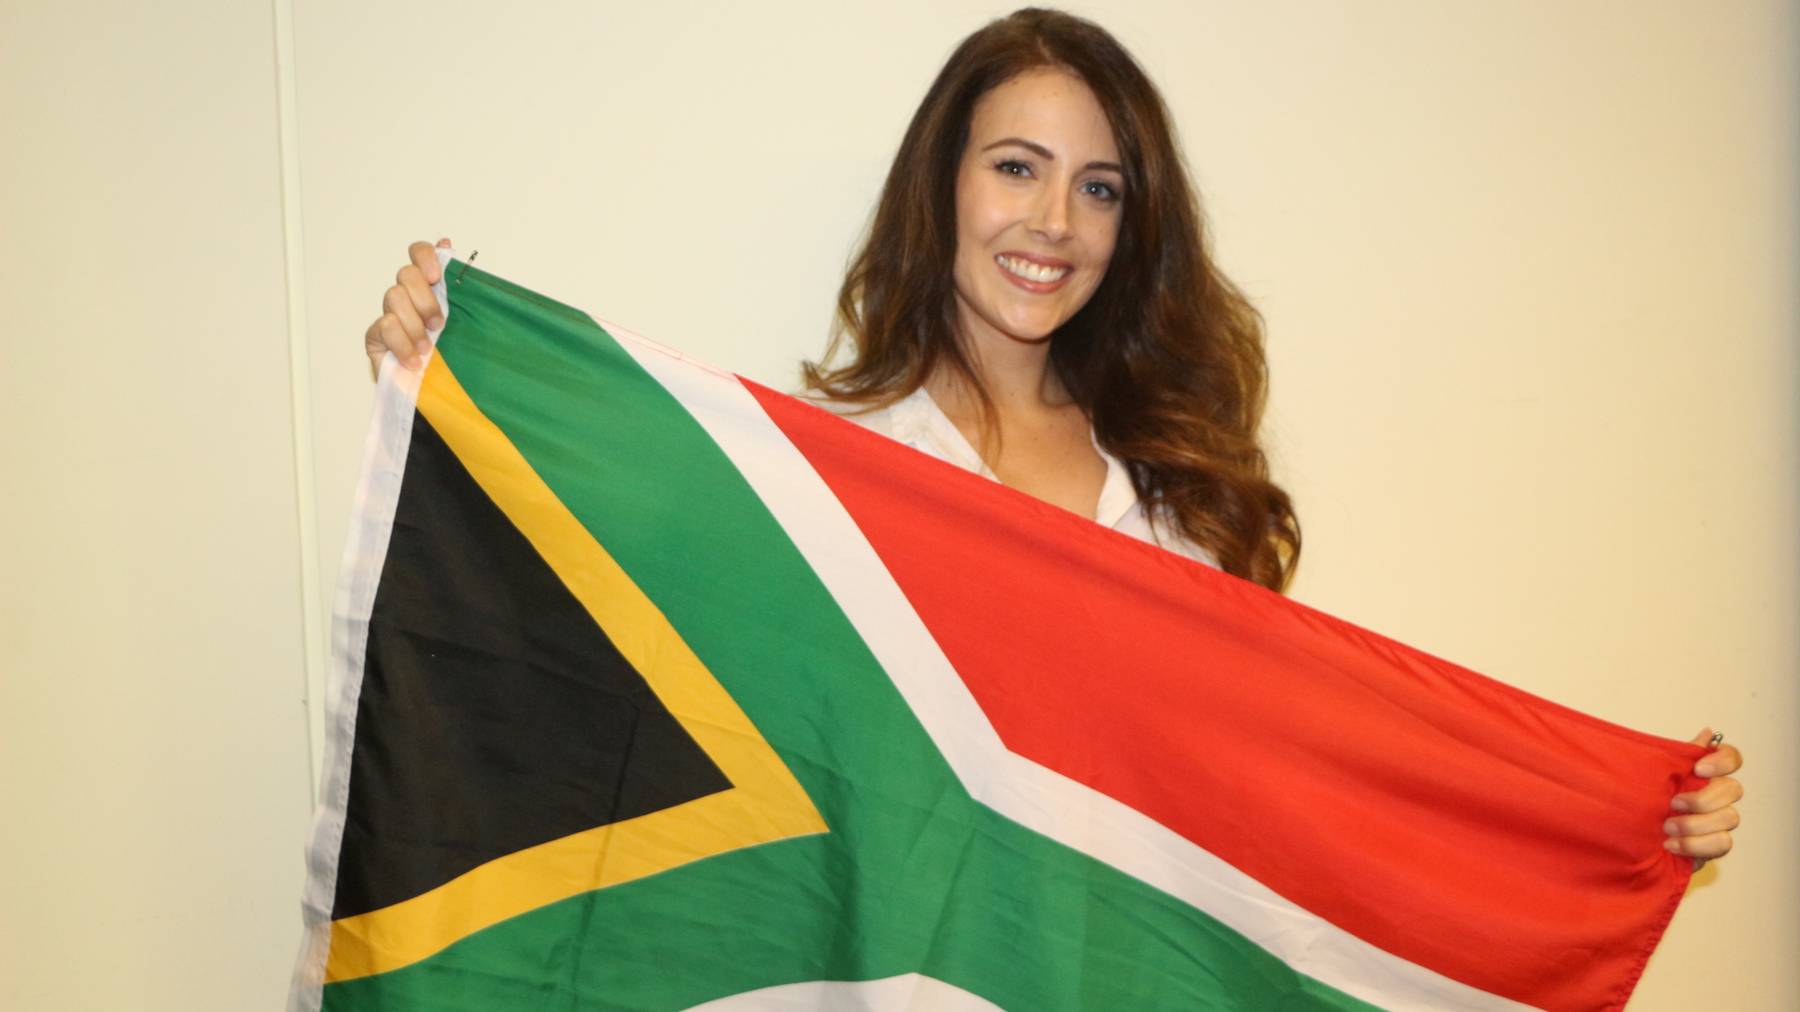 Carla De Giorgi aus Safenwil 36 Grad Südafrika